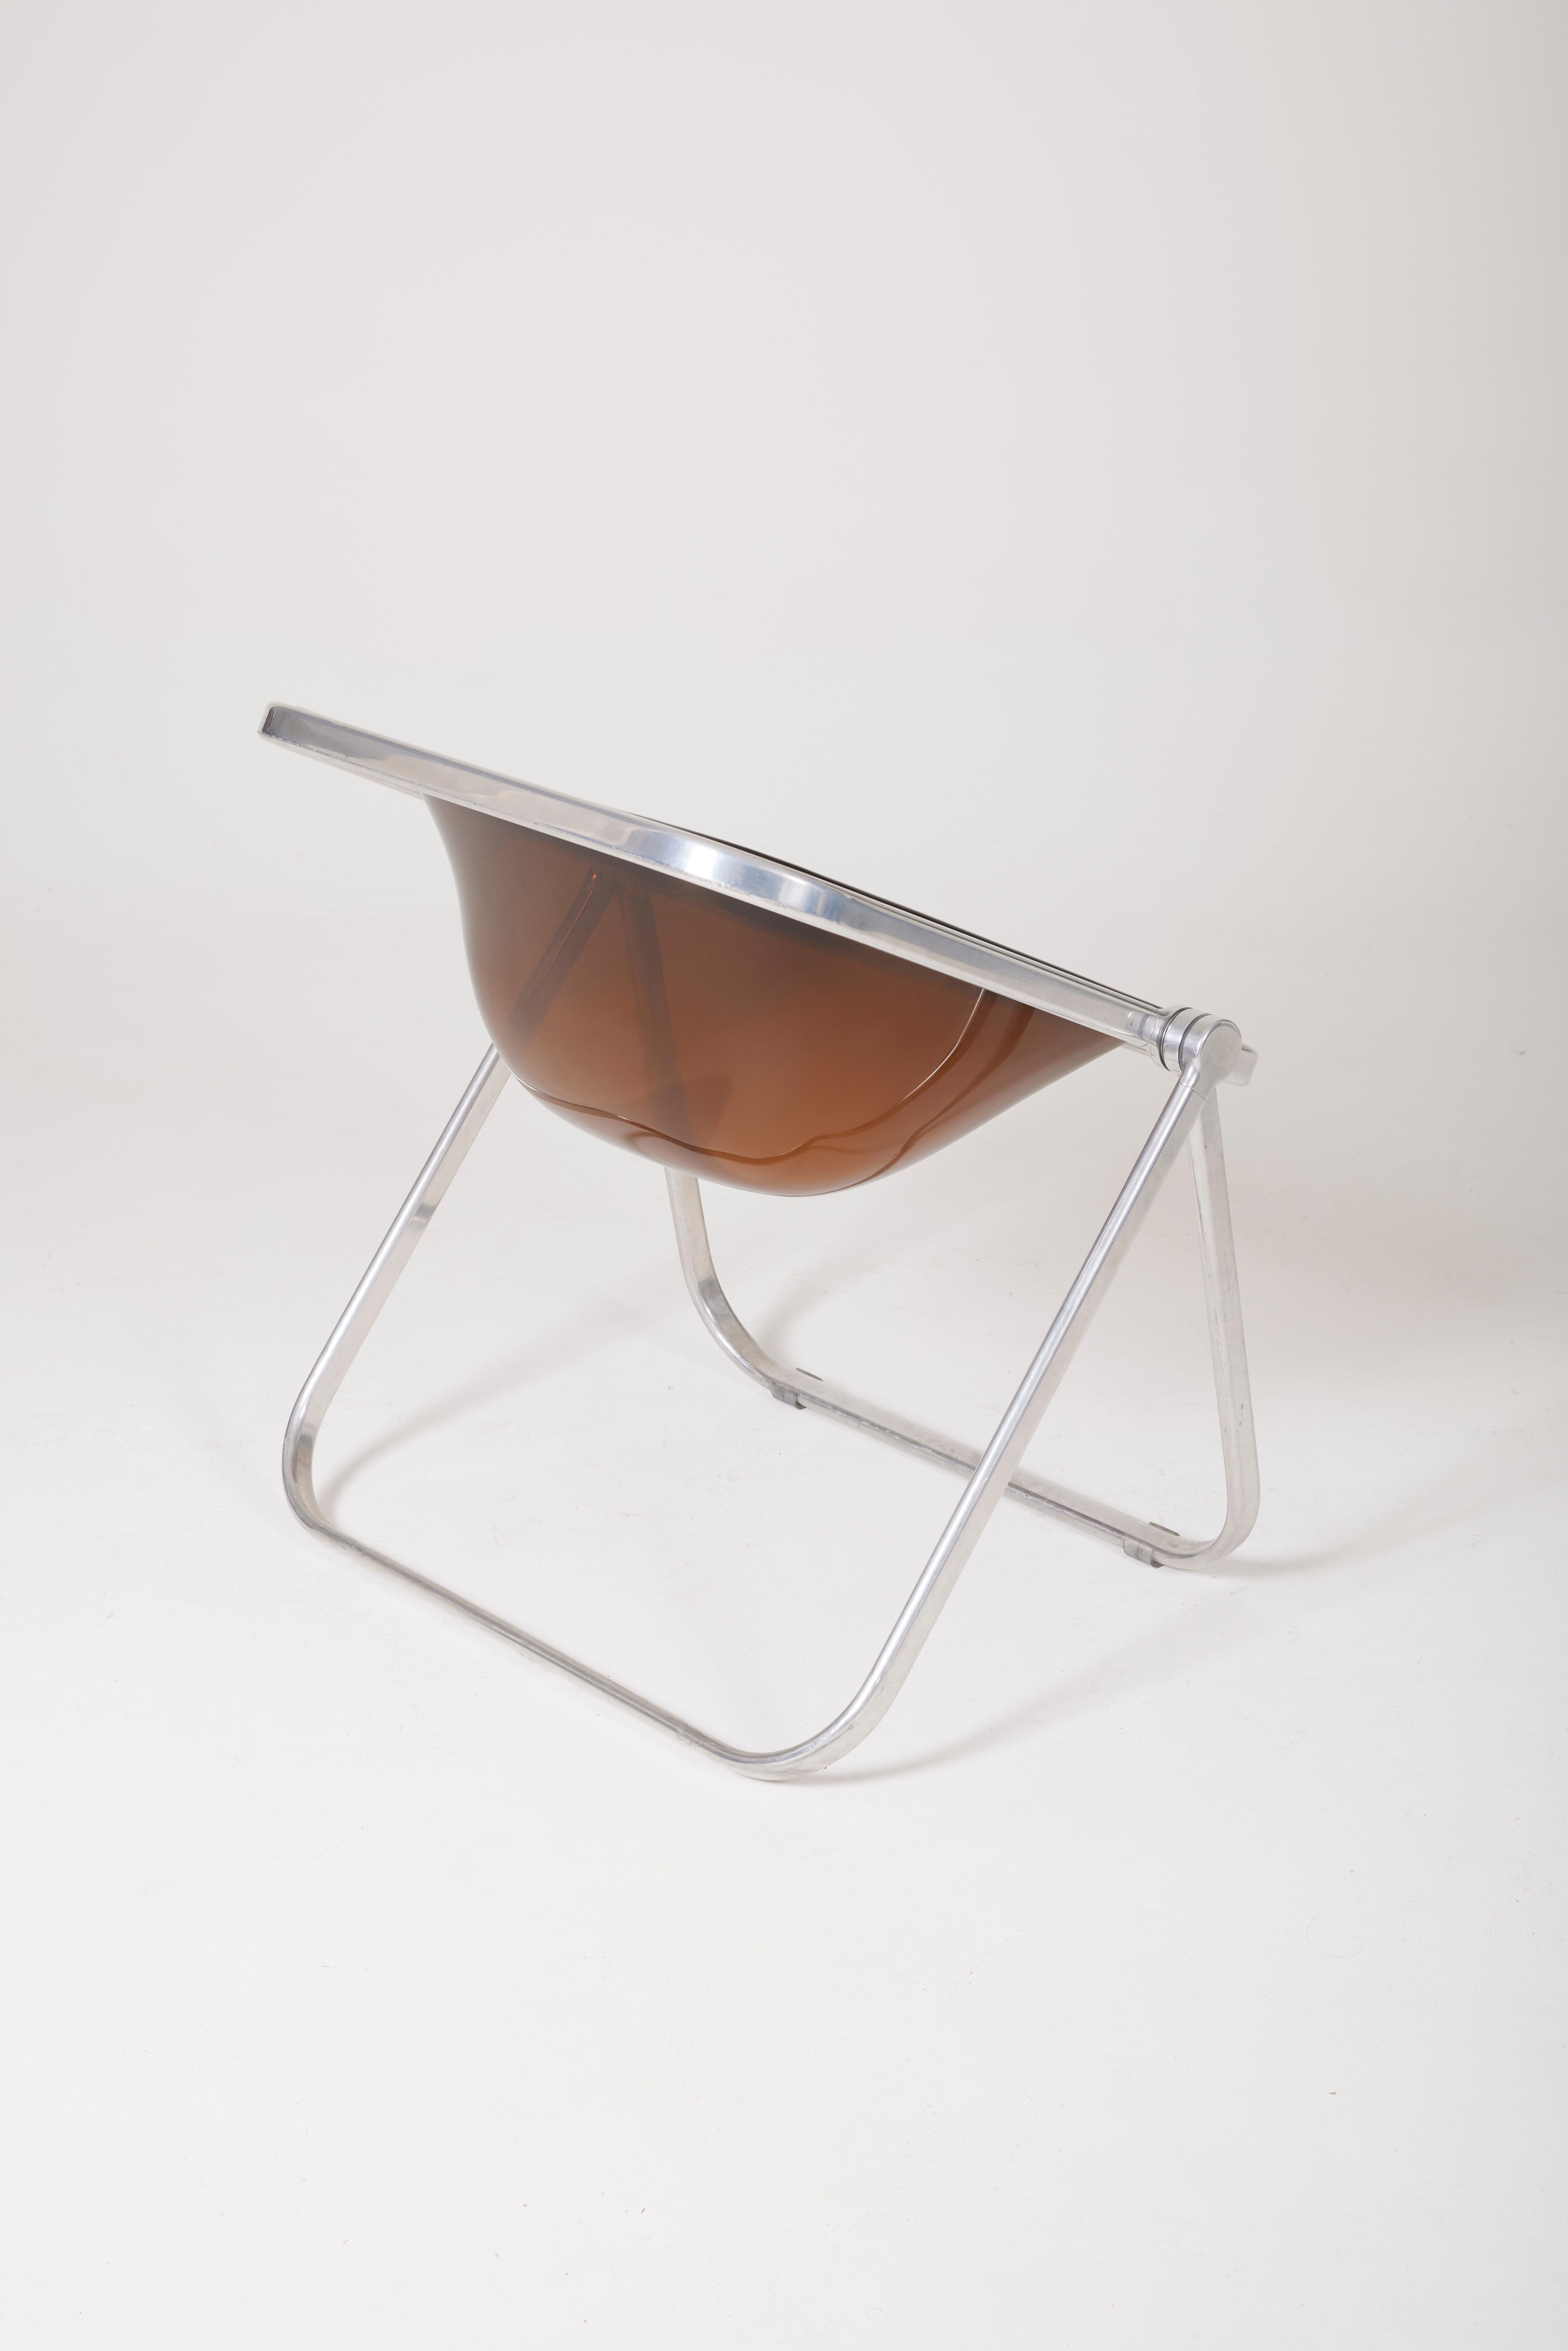 'Plona' Plexiglass Armchair by Giancarlo Piretti 2